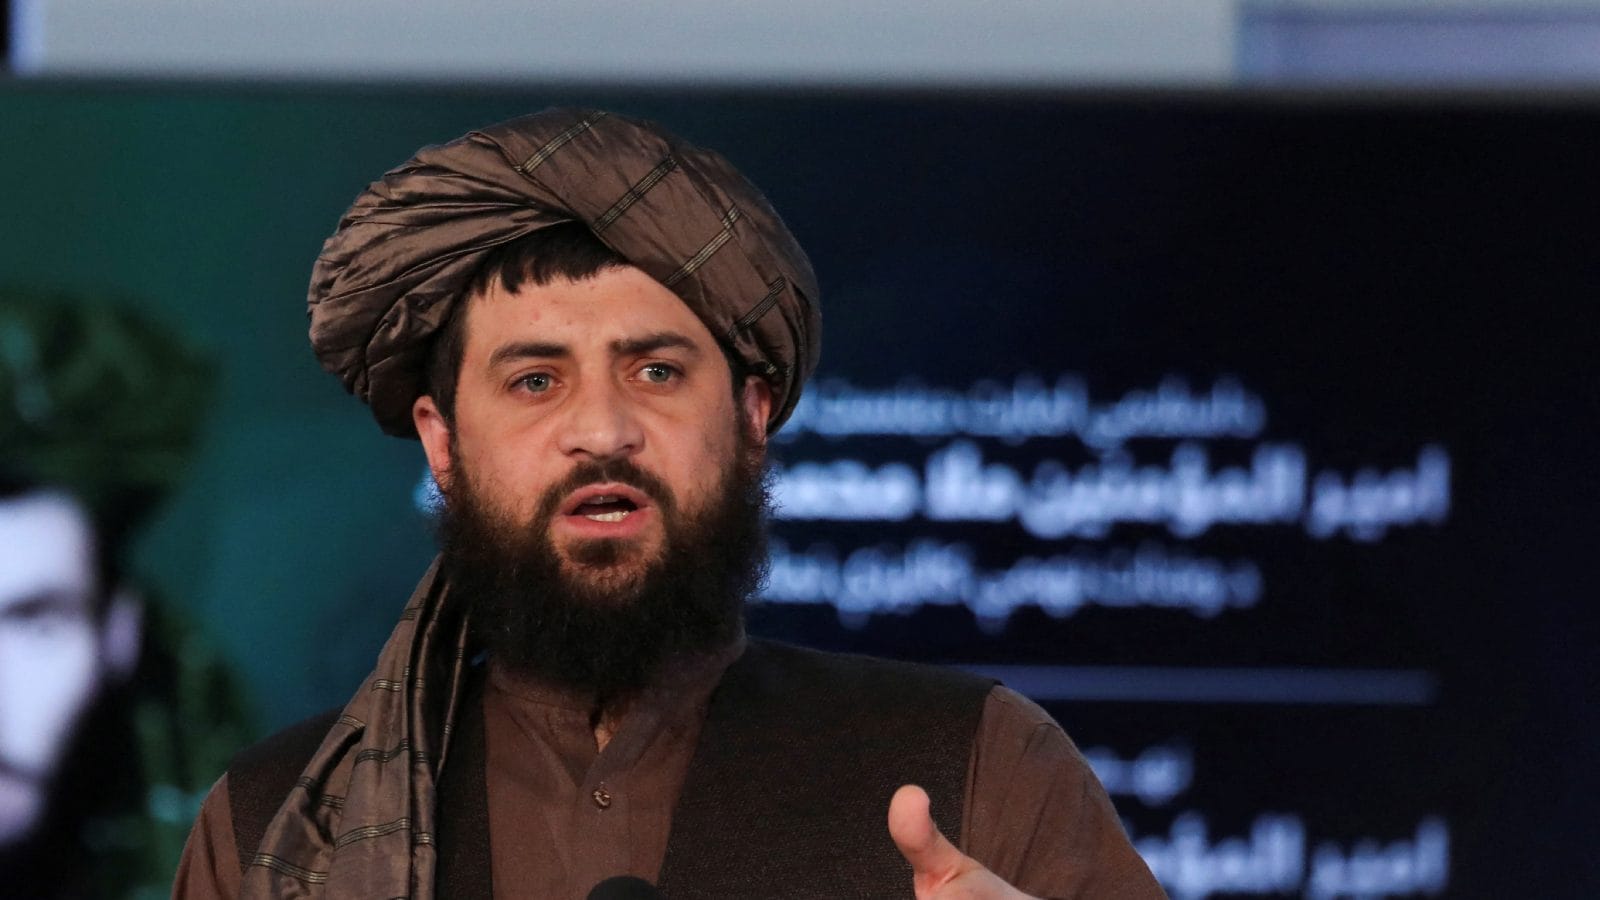 Pak, berhenti membiarkan pesawat tak berawak AS menggunakan wilayah udara Anda: menteri pertahanan Taliban menanggapi serangan